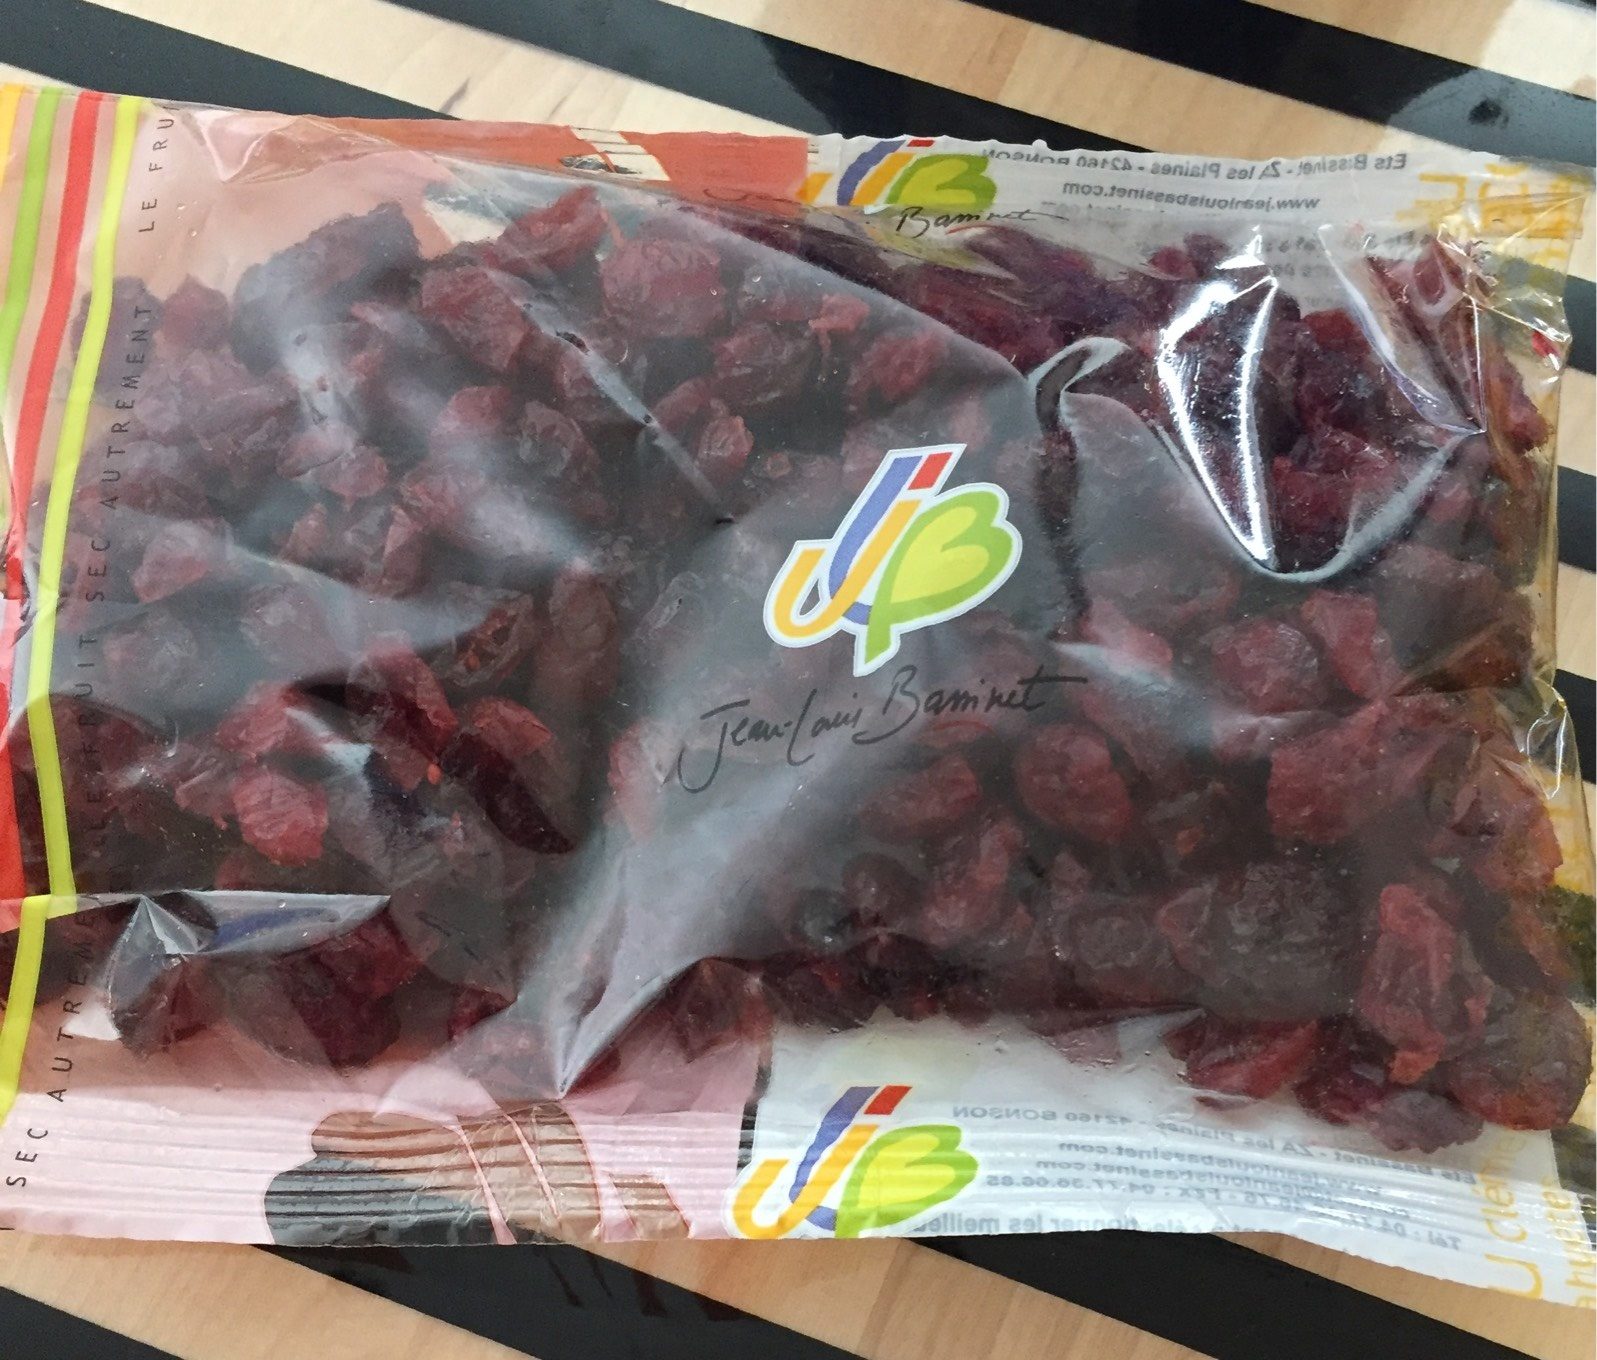 Cranberries séchées - Product - fr